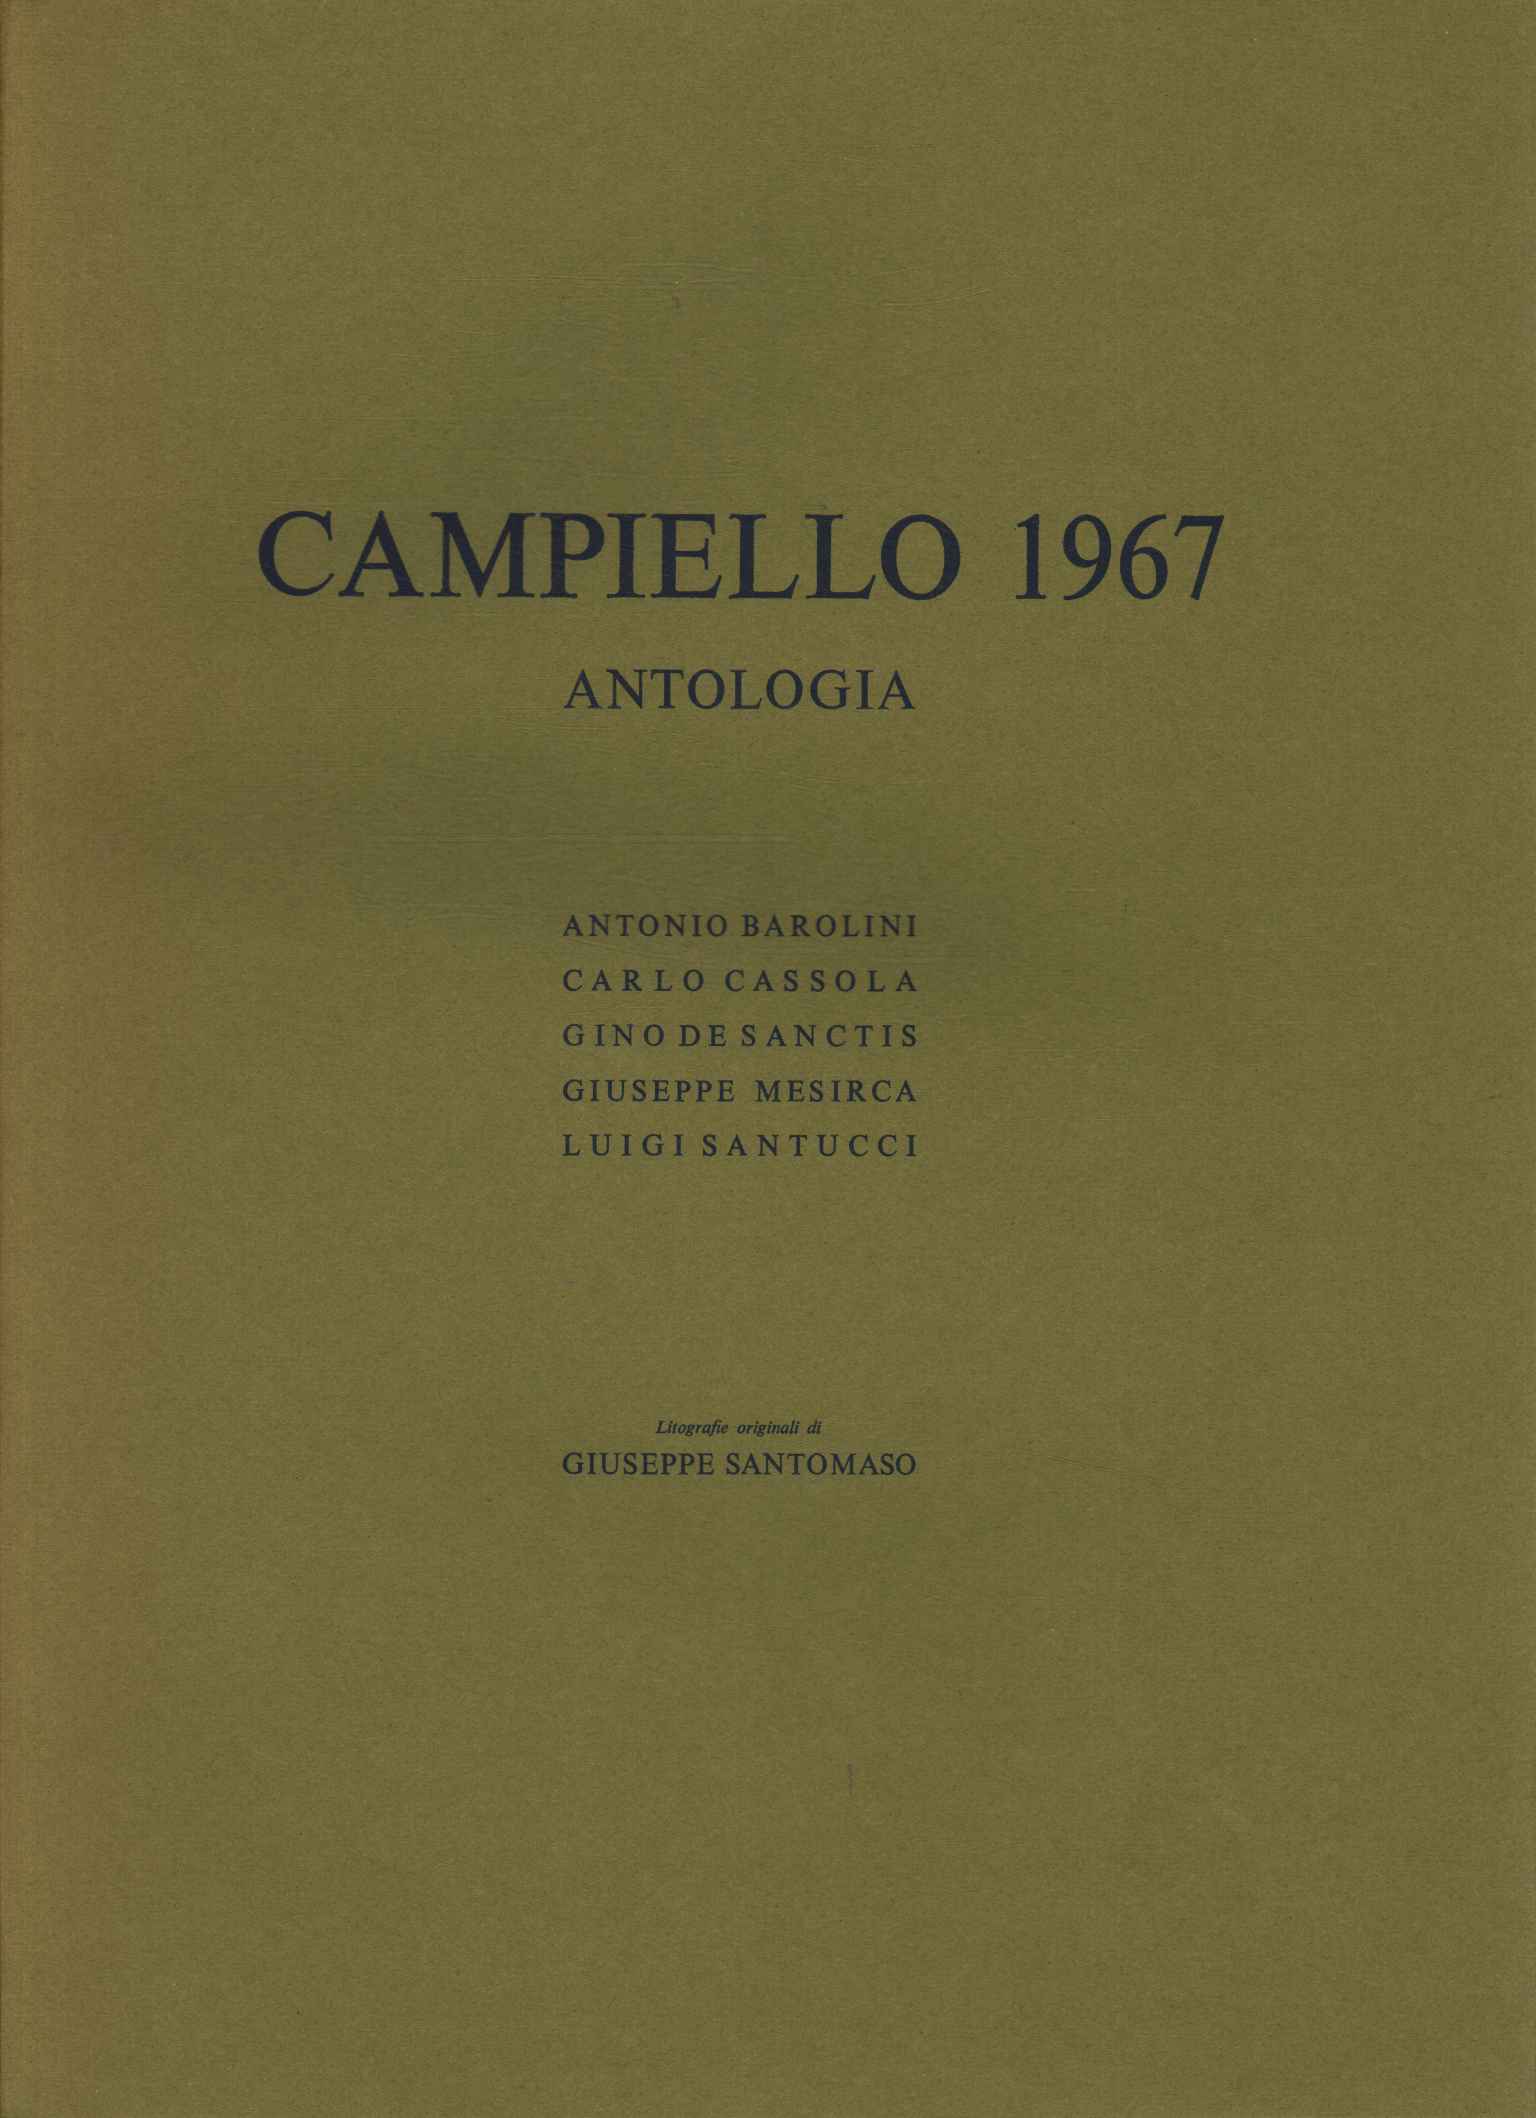 Anthologie de Campiello 1967